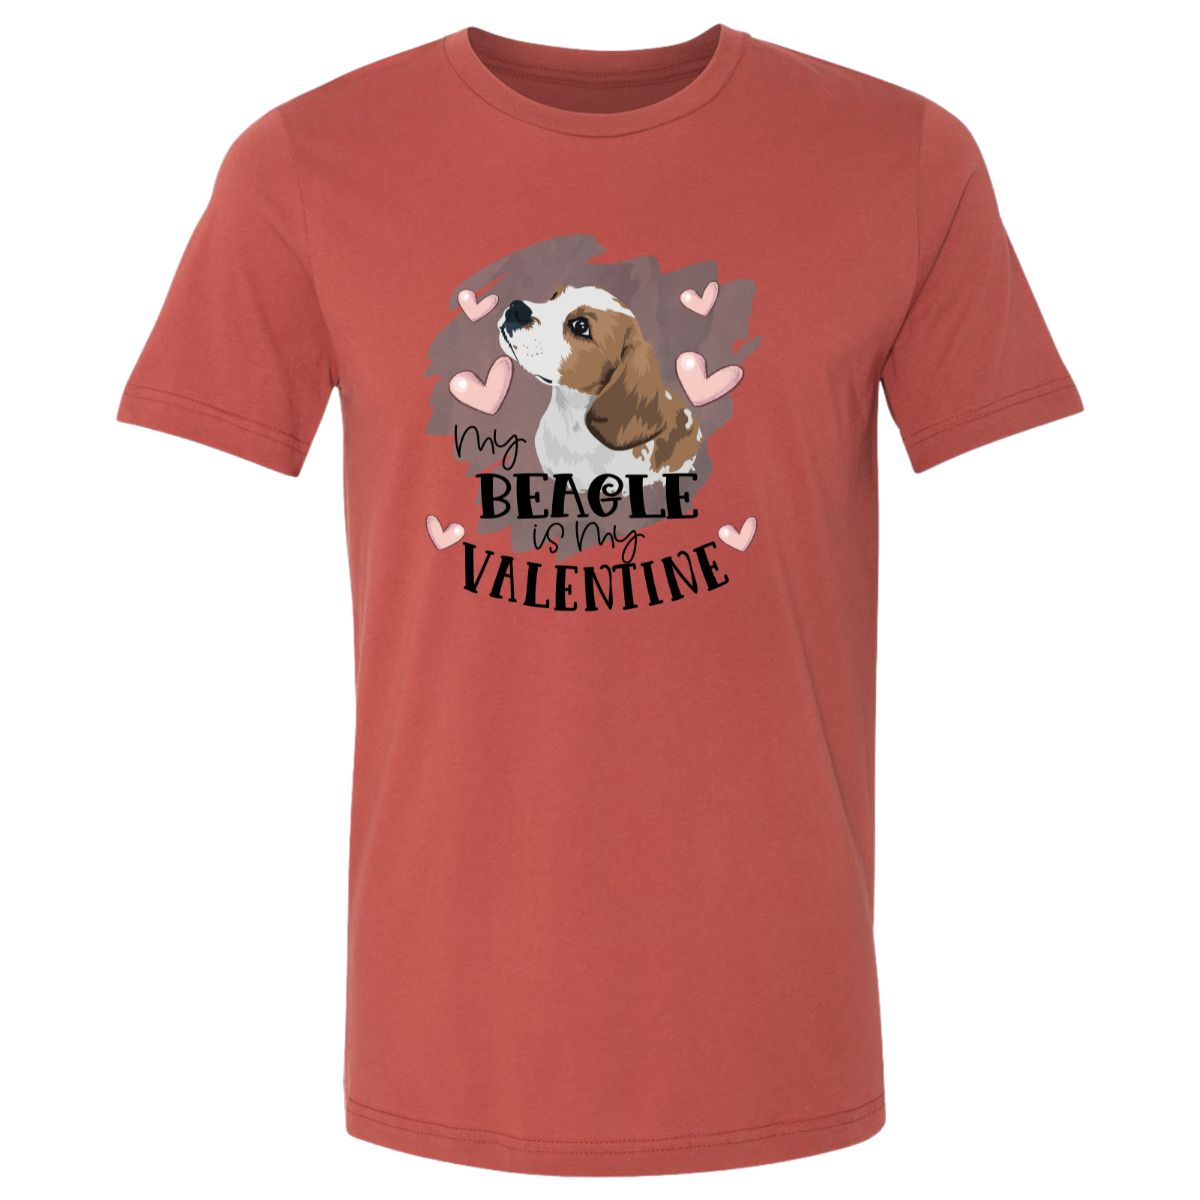 My Beagle is My Valentine Design